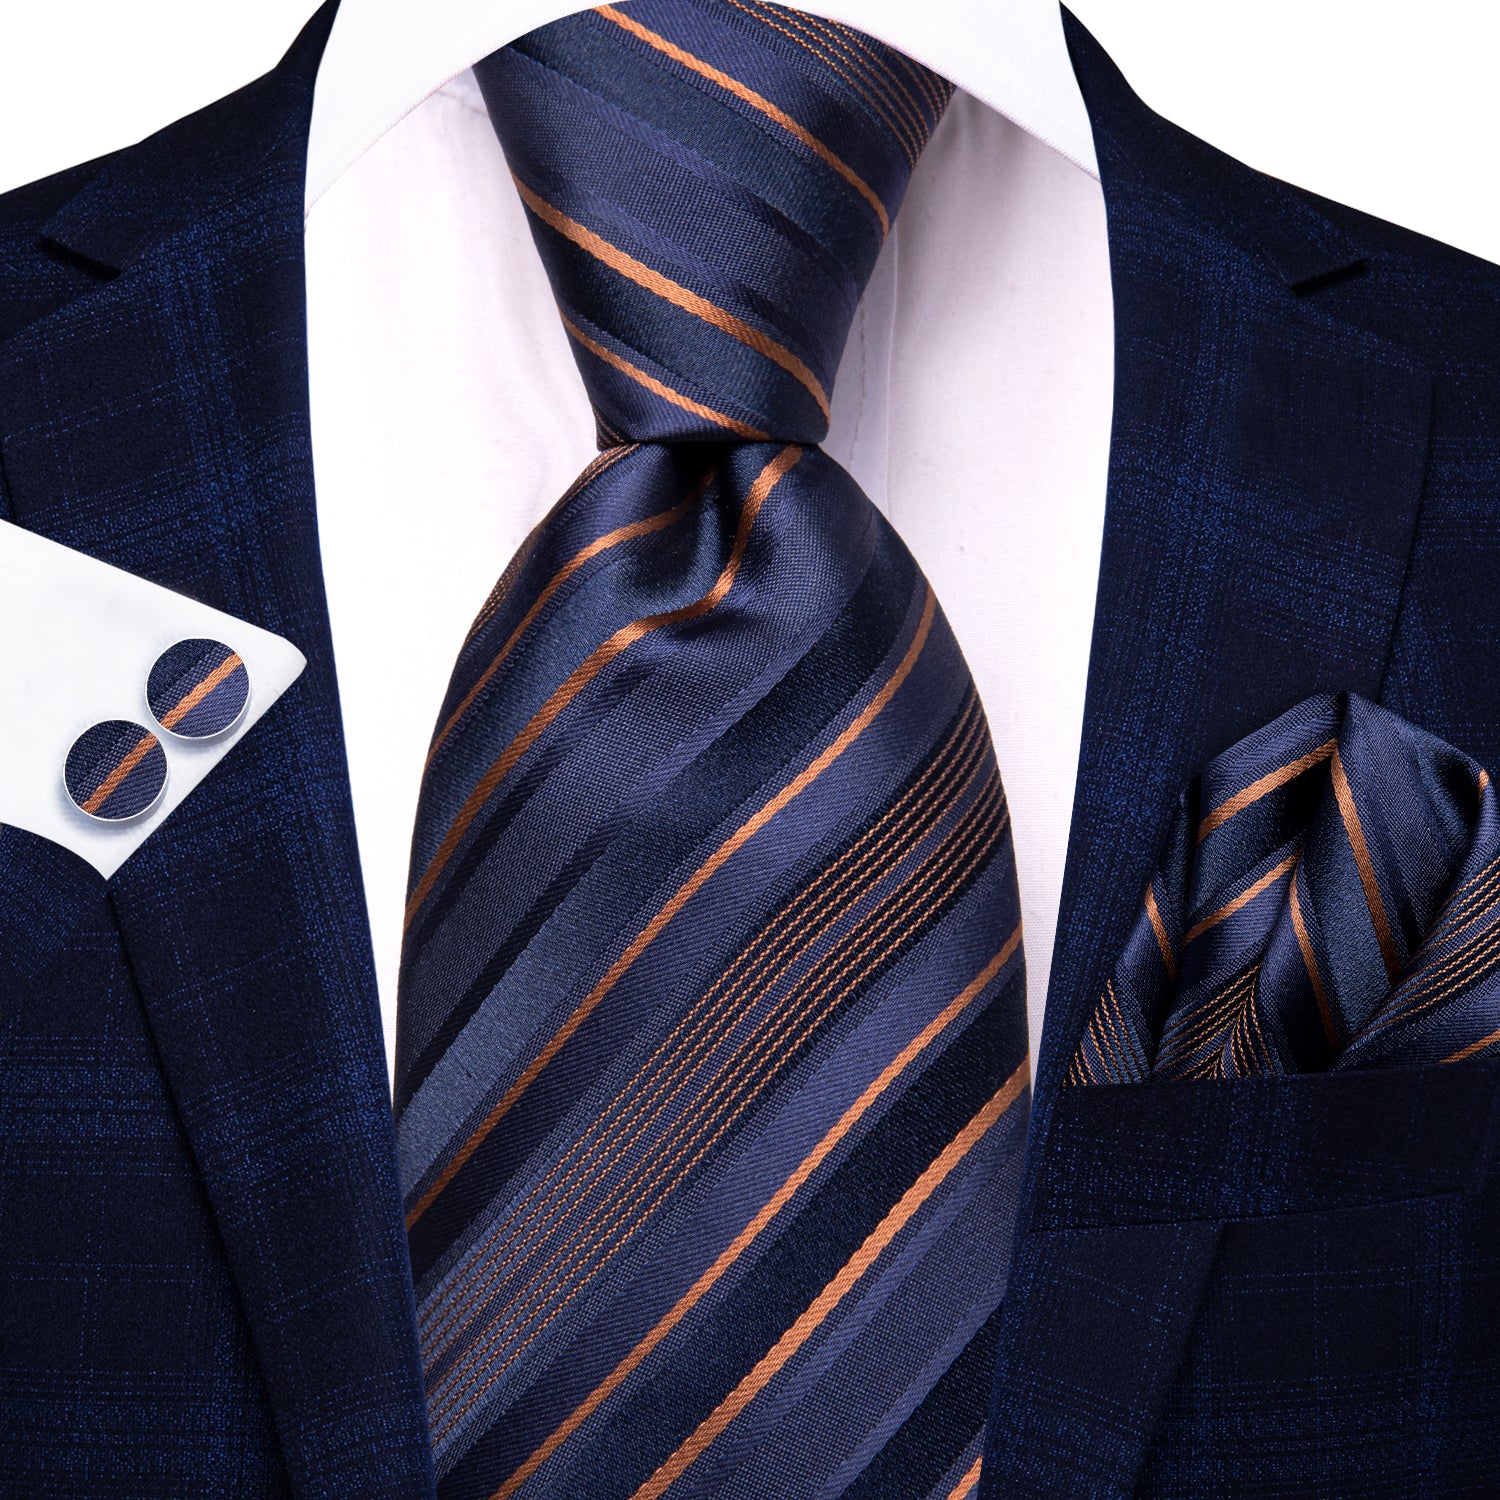 Hi-Tie Blue Orange Striped Men's Tie Pocket Square Cufflinks Set